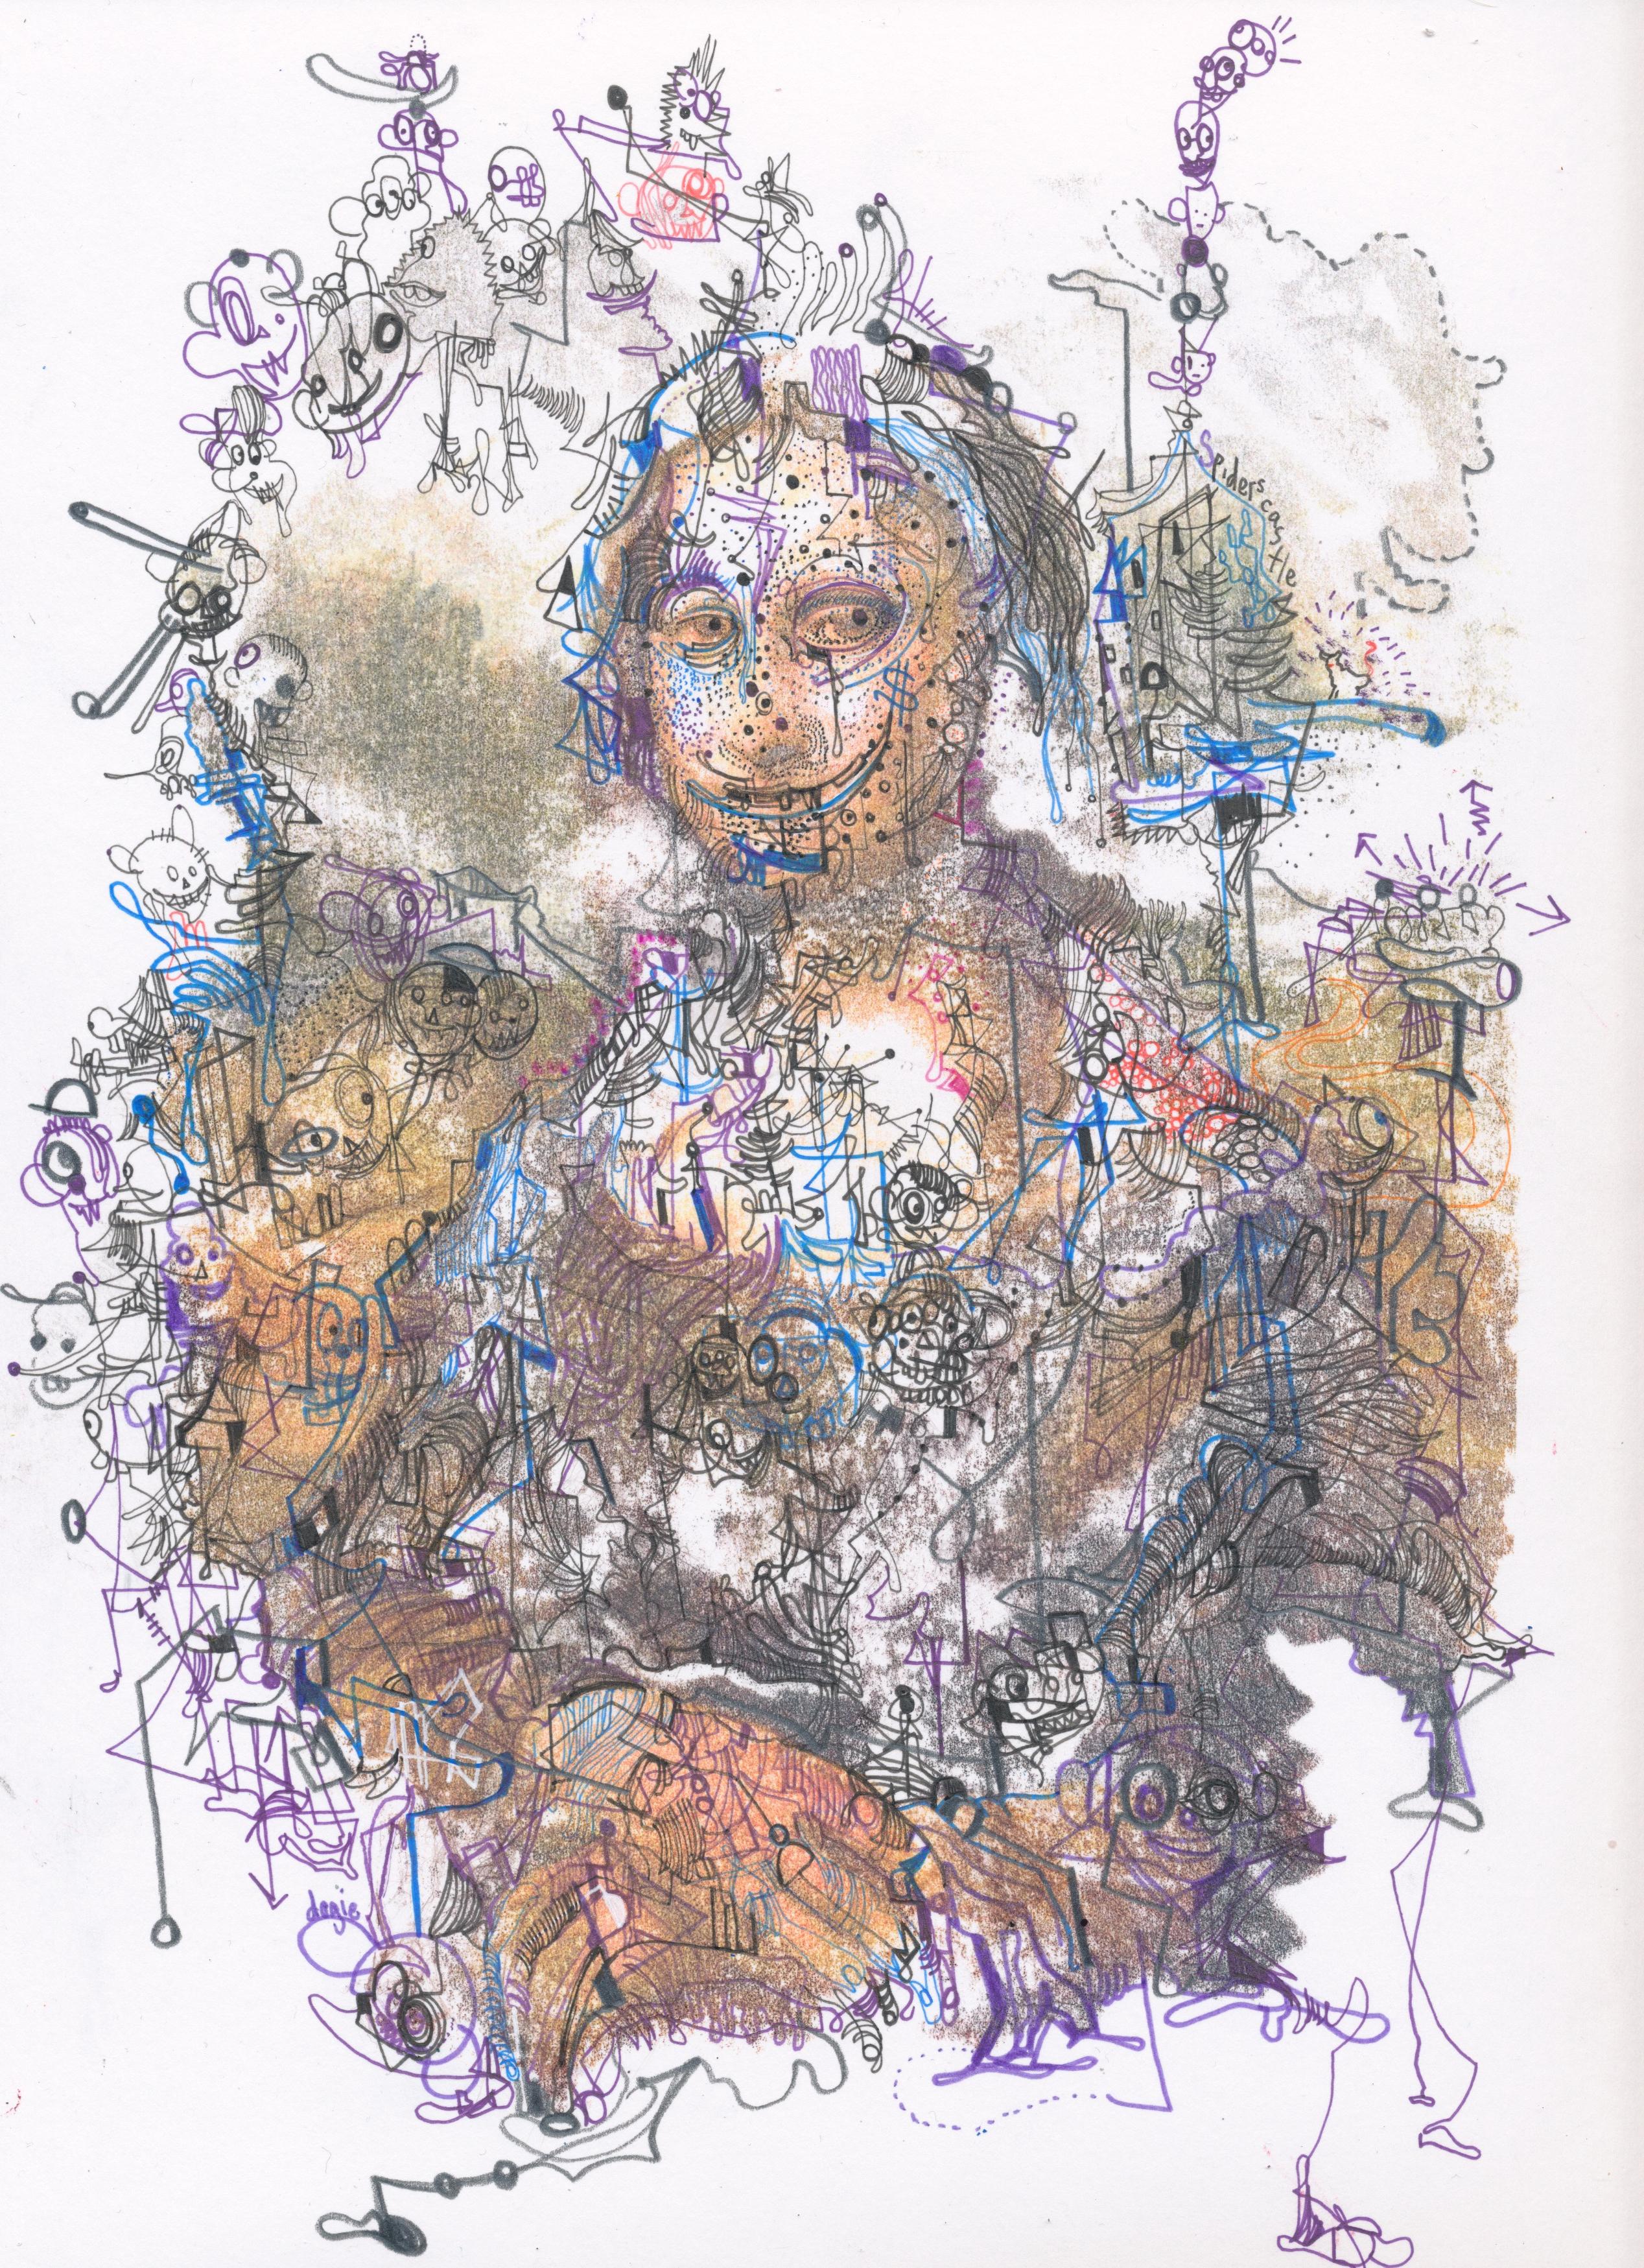 Aquarell und Tinte auf Bristolpapier

Michael Alan ist ein 1977 geborener amerikanischer Künstler, der in New York, USA, lebt und arbeitet. Als multidisziplinärer Künstler. Seine Arbeiten wurden in vielen Einzelausstellungen, über 200